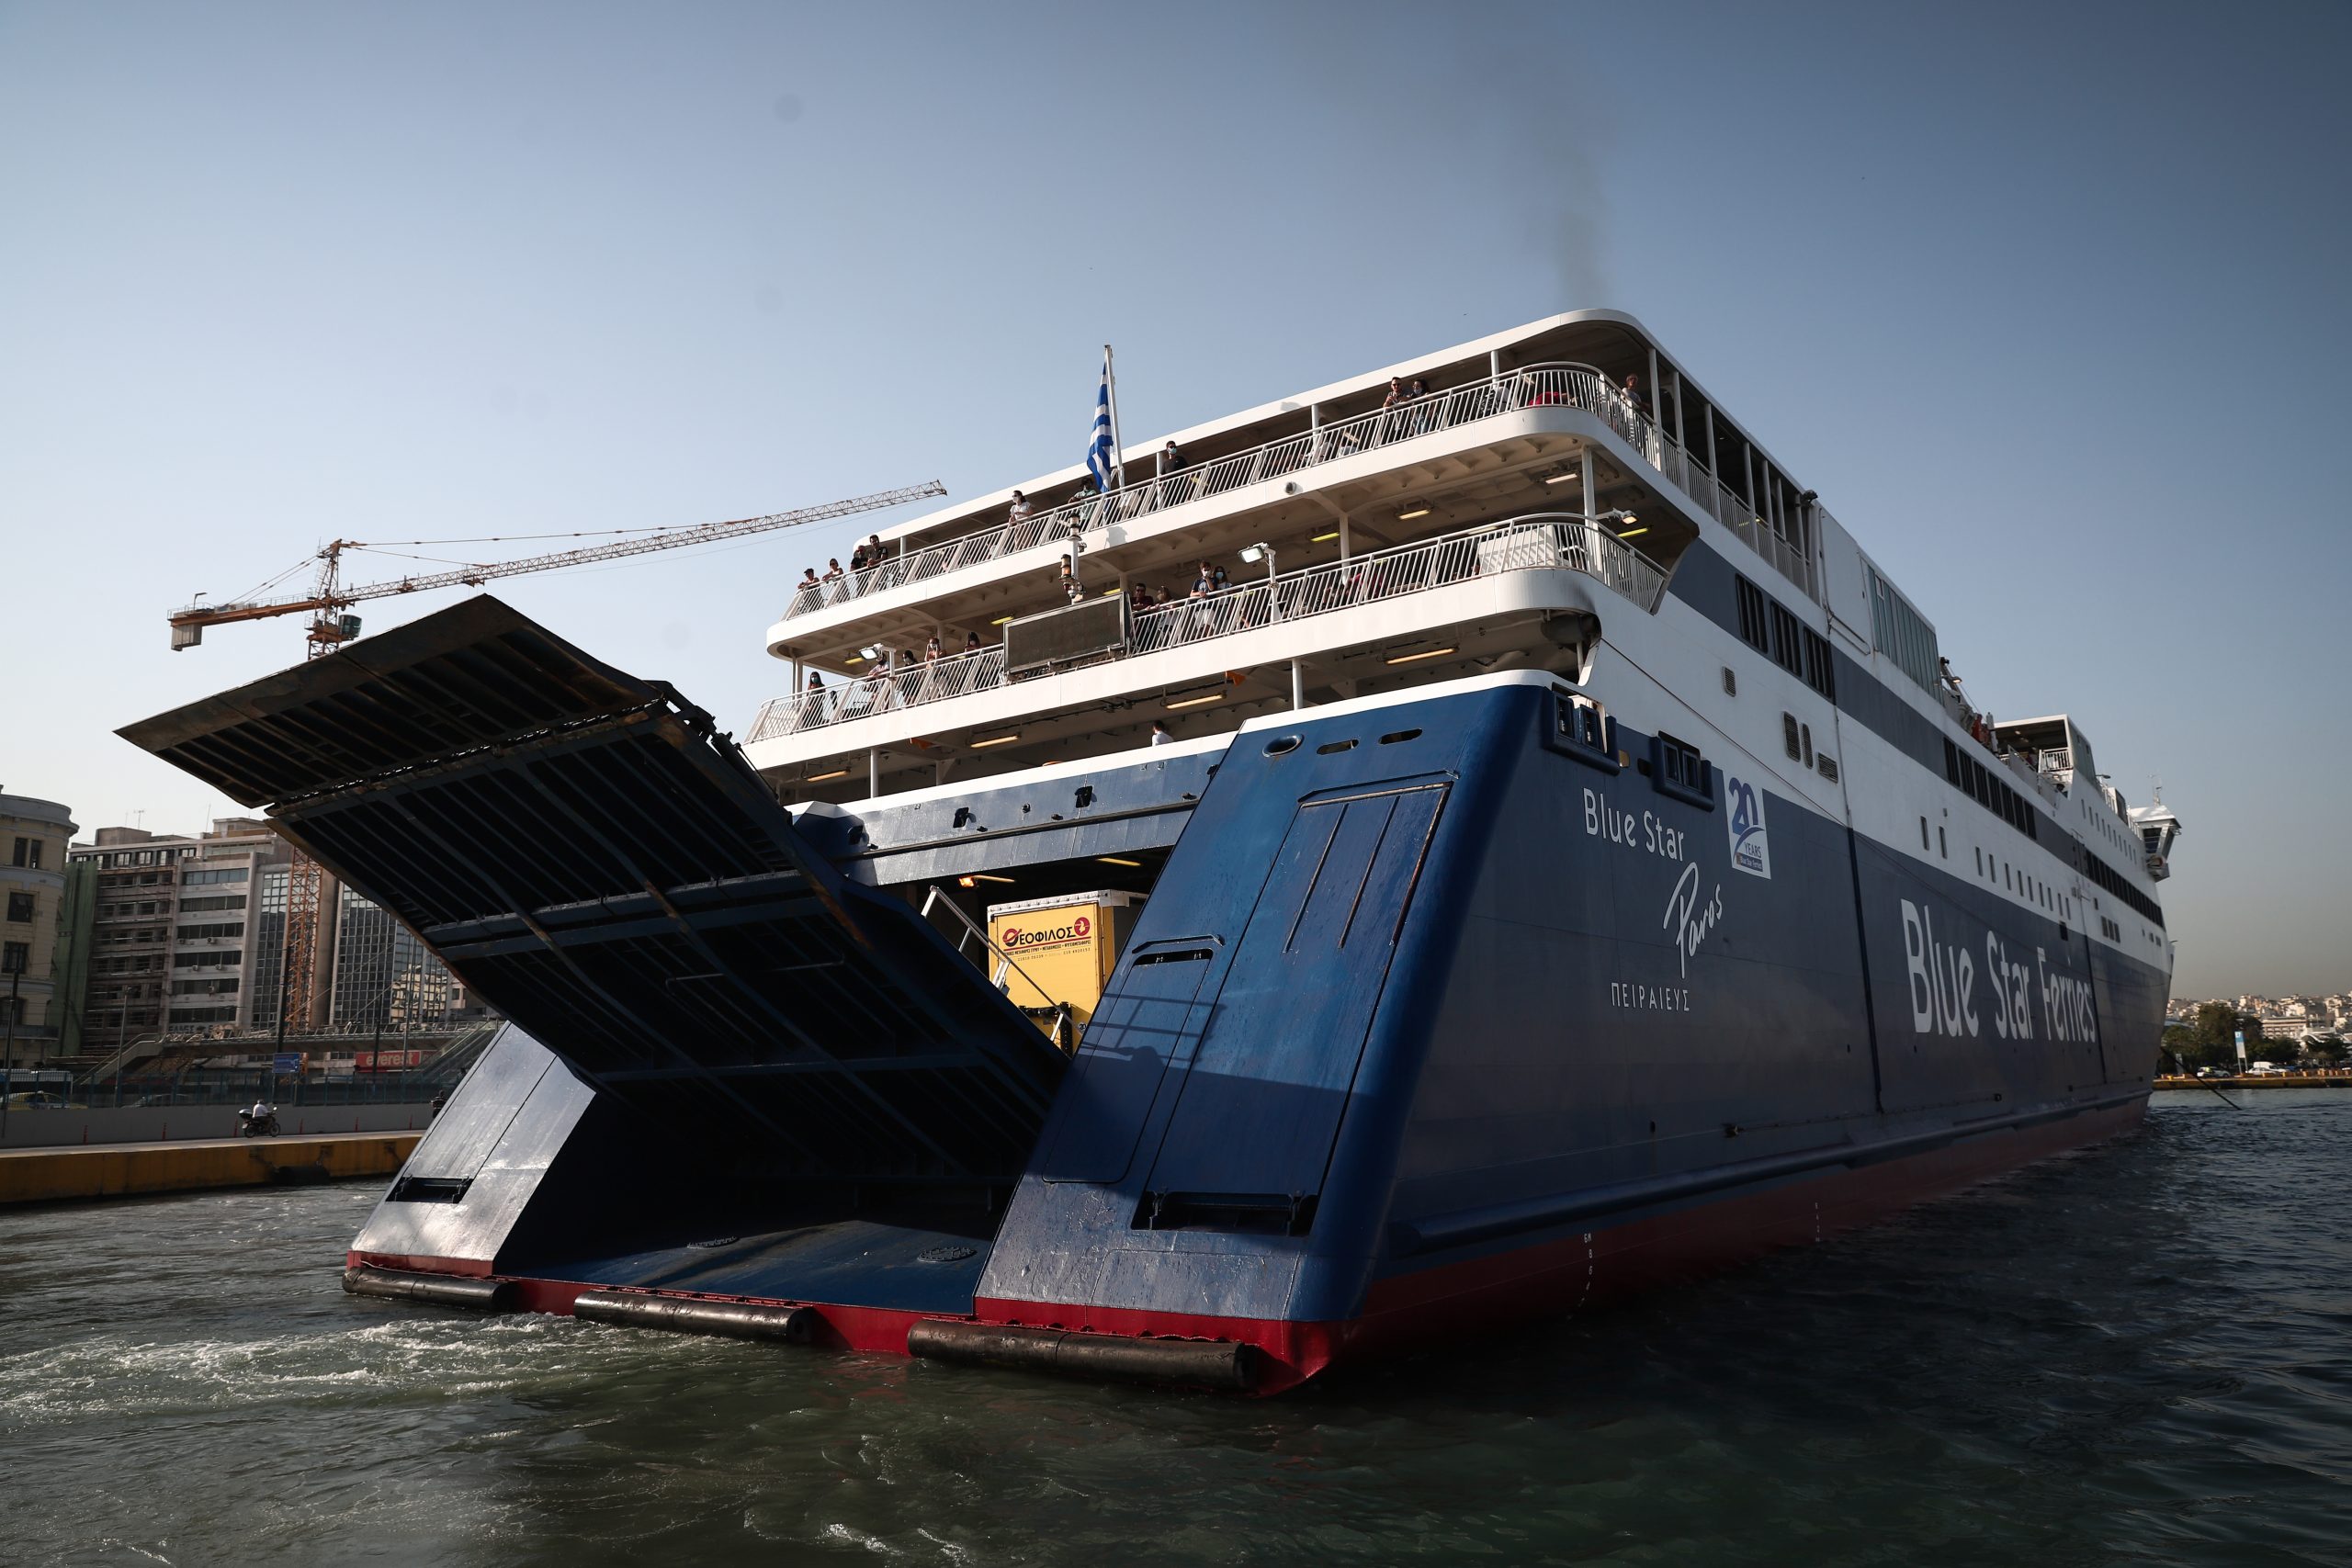 XRTC – More than 3 billion euros are needed to renew the coastal fleet